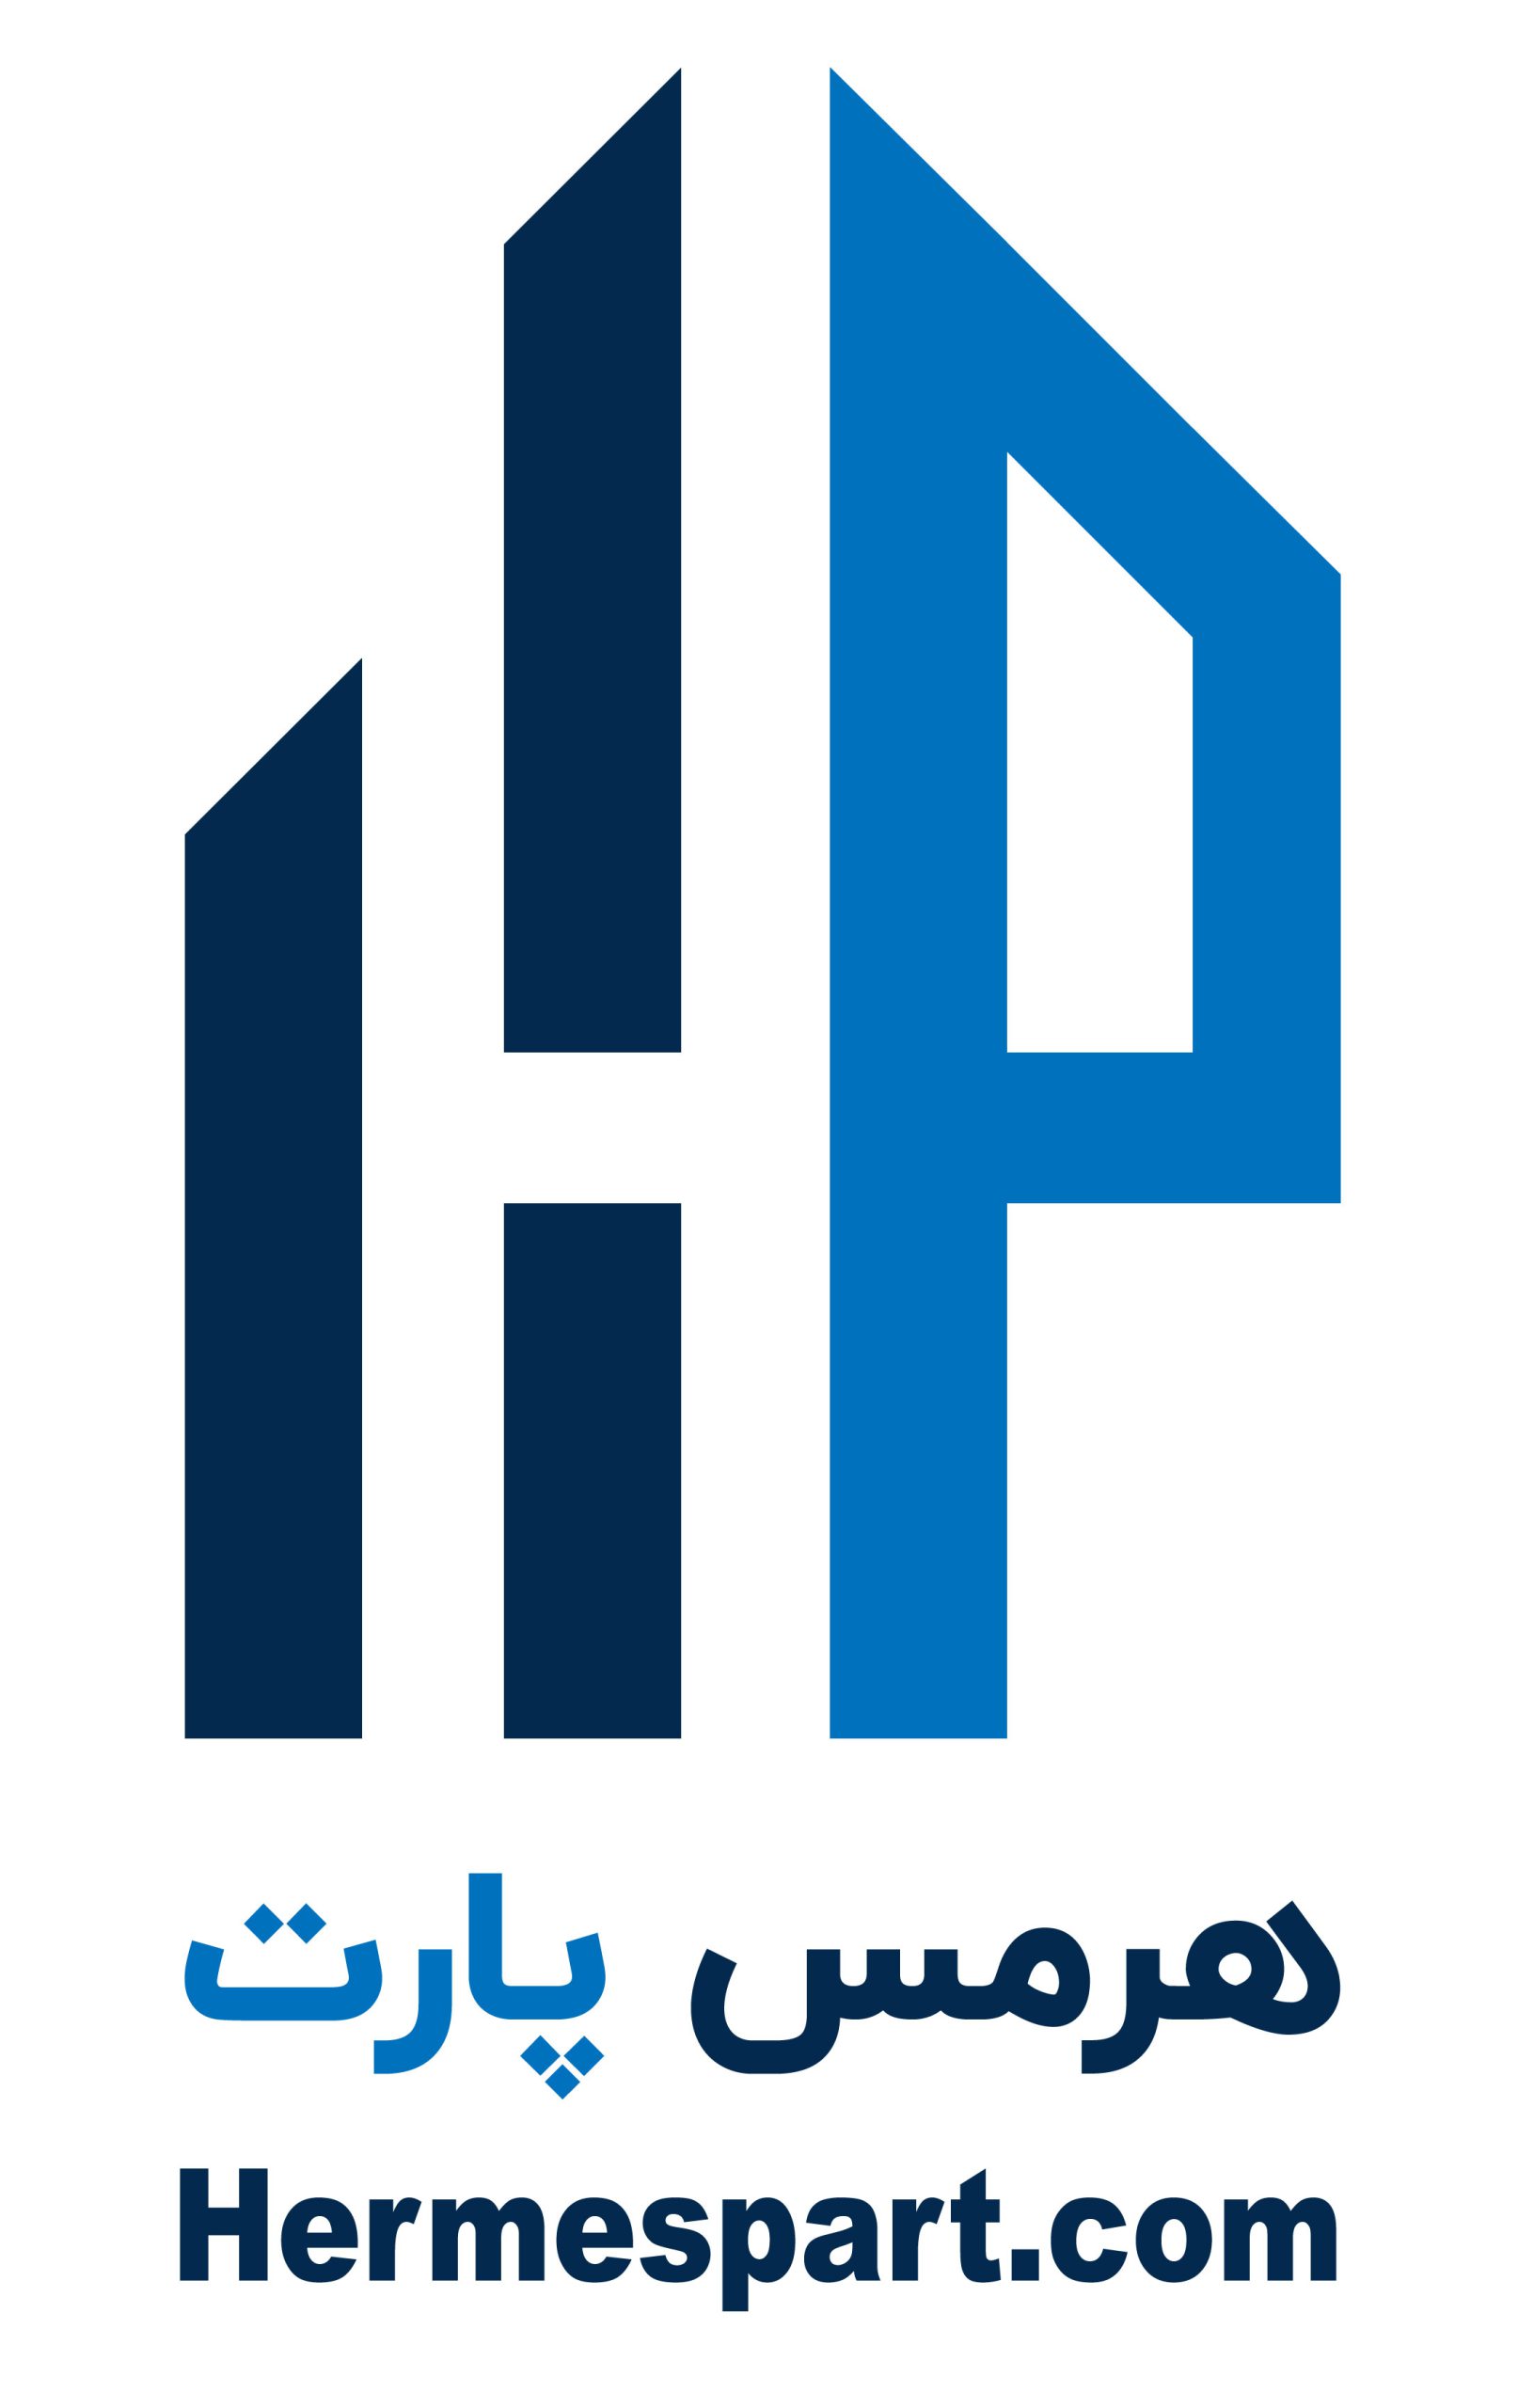 hermespart-logo